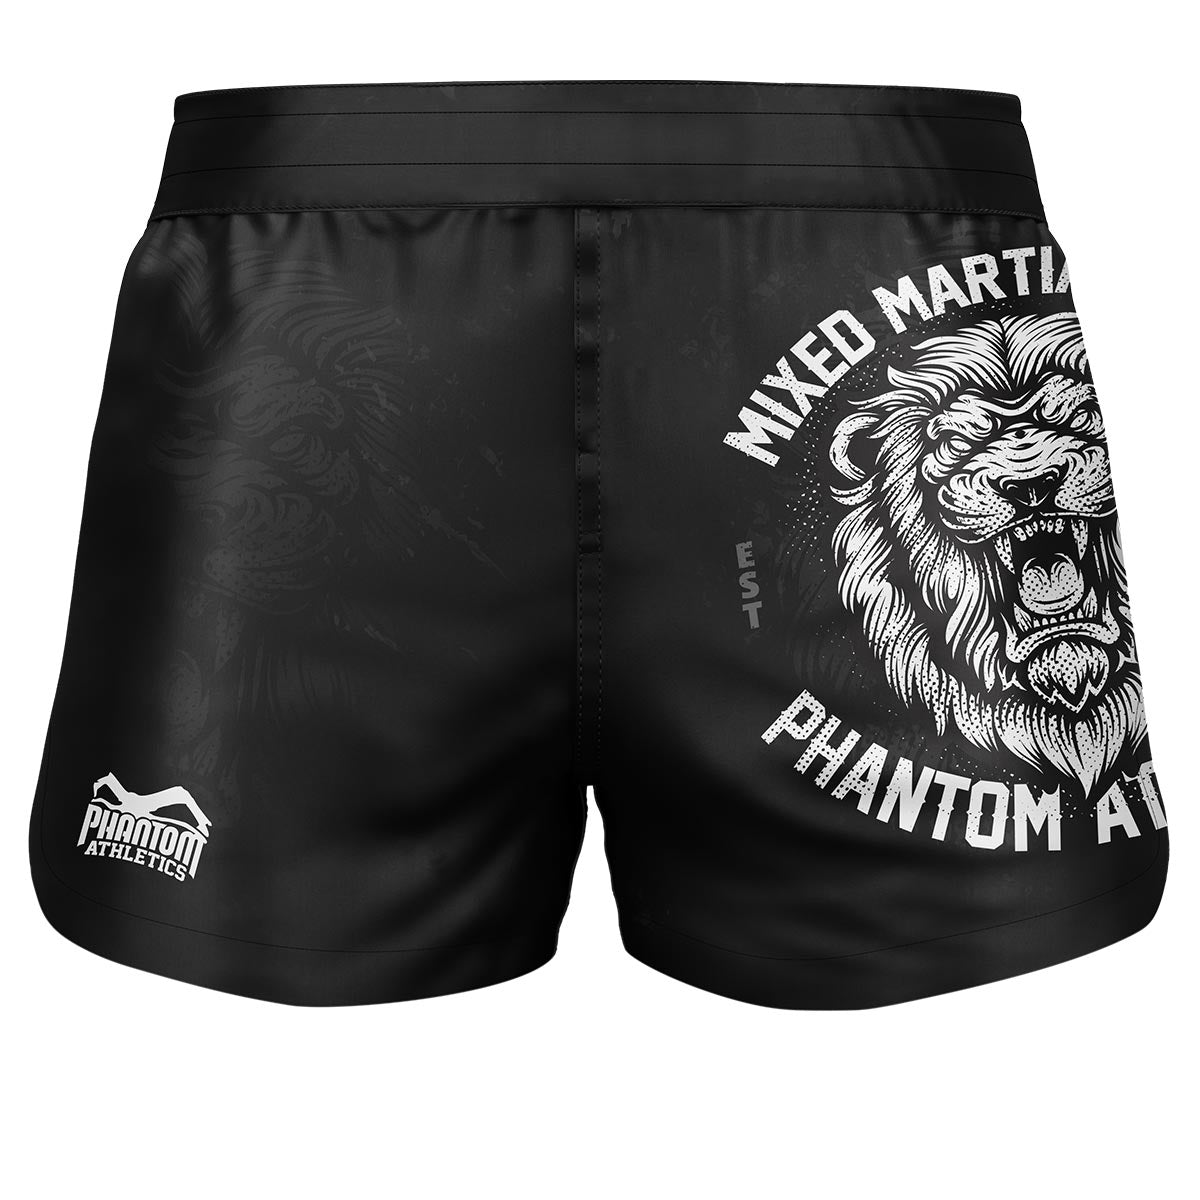 Phantom Fightshorts Fusión 2en1. Shorts definitivos para tus artes marciales. Ideal para MMA, Muay Thai, BJJ, lucha libre y más. En color negro con diseño de león.